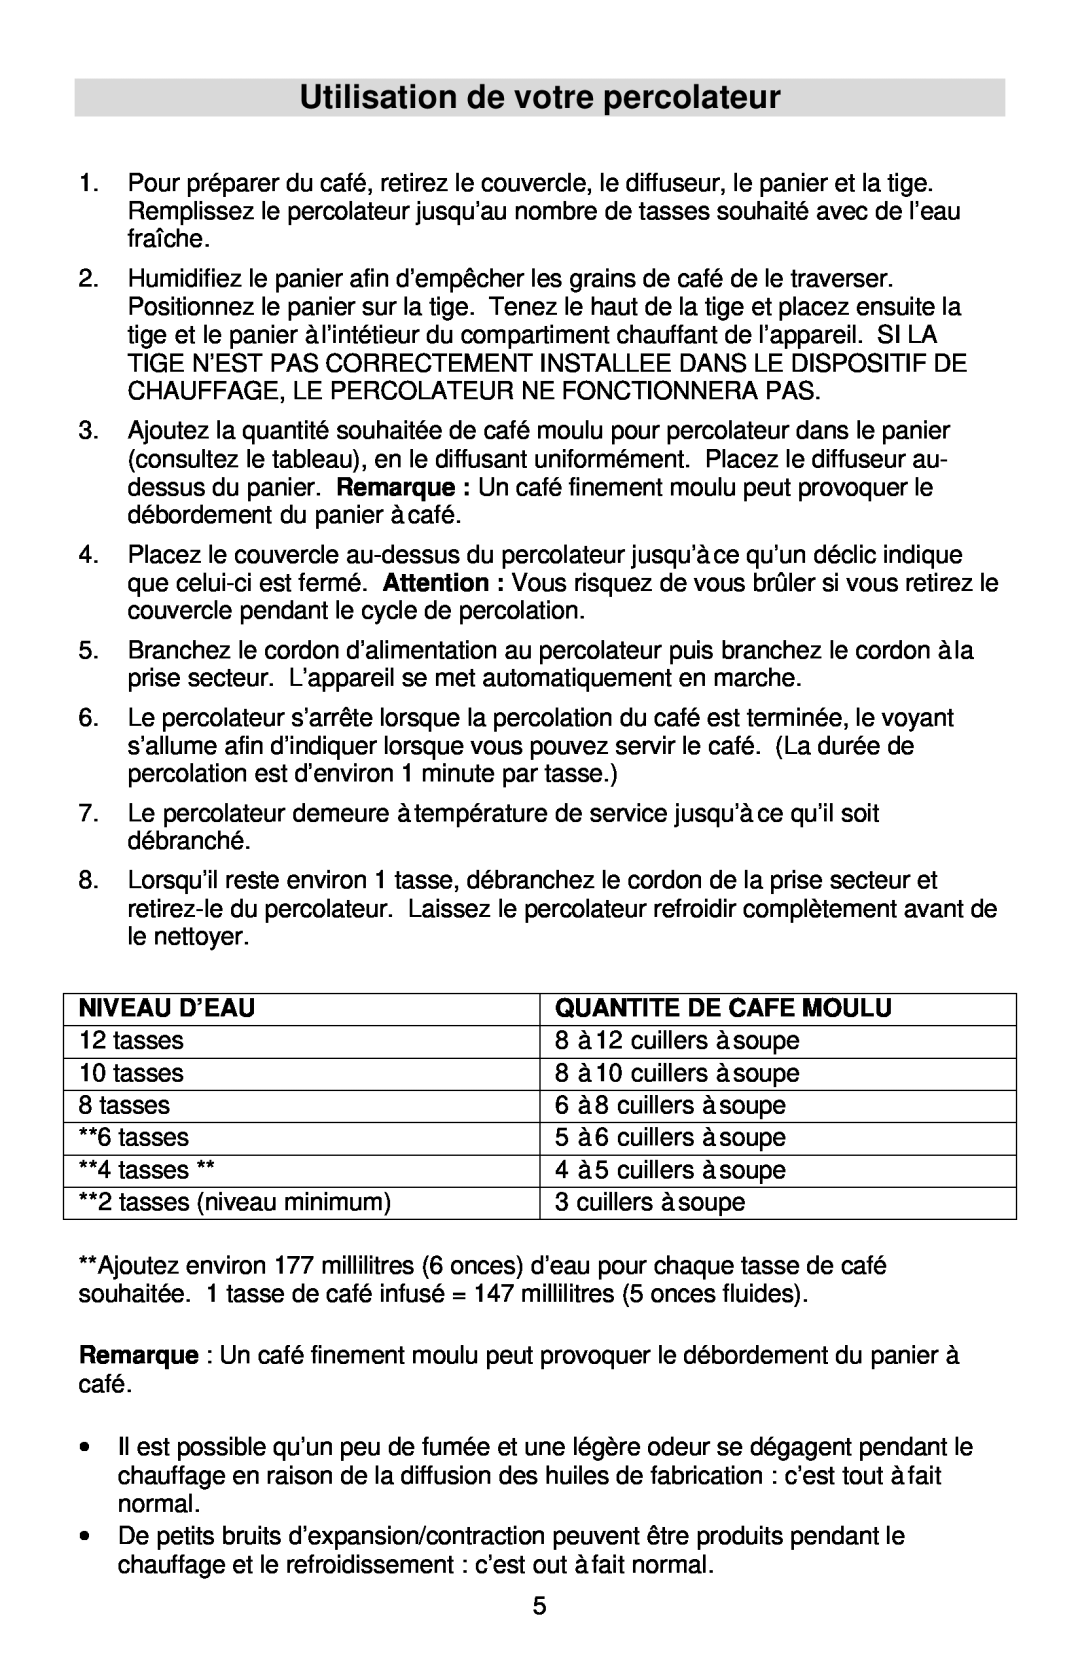 West Bend Coffeemaker manual Utilisation de votre percolateur, Niveau D’Eau, Quantite De Cafe Moulu 